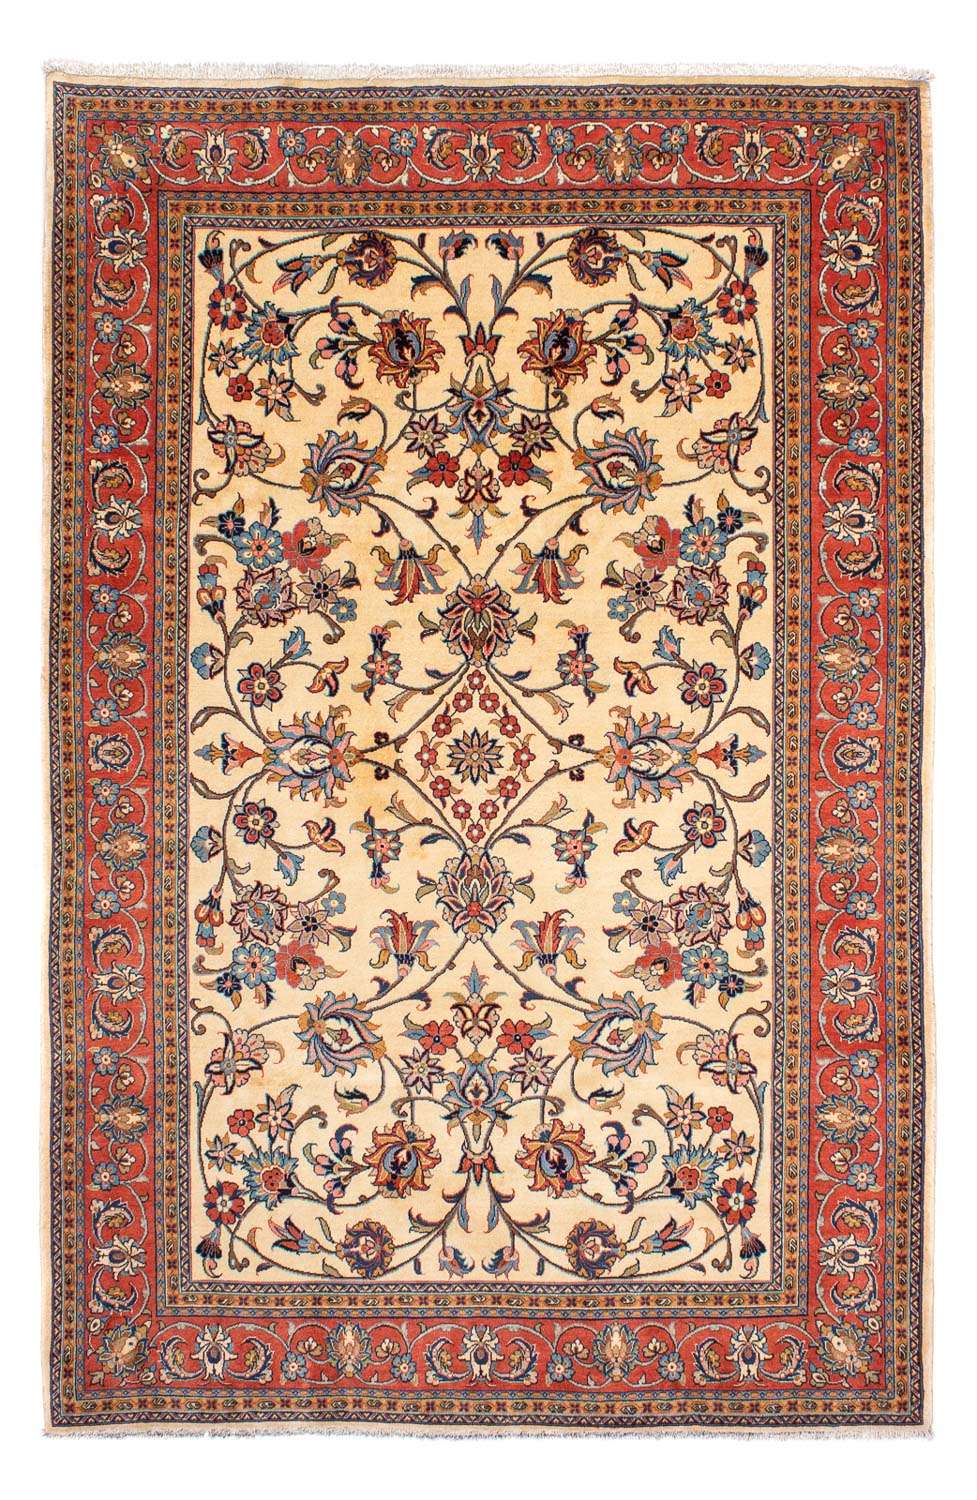 Tapis persan - Classique - 298 x 205 cm - beige